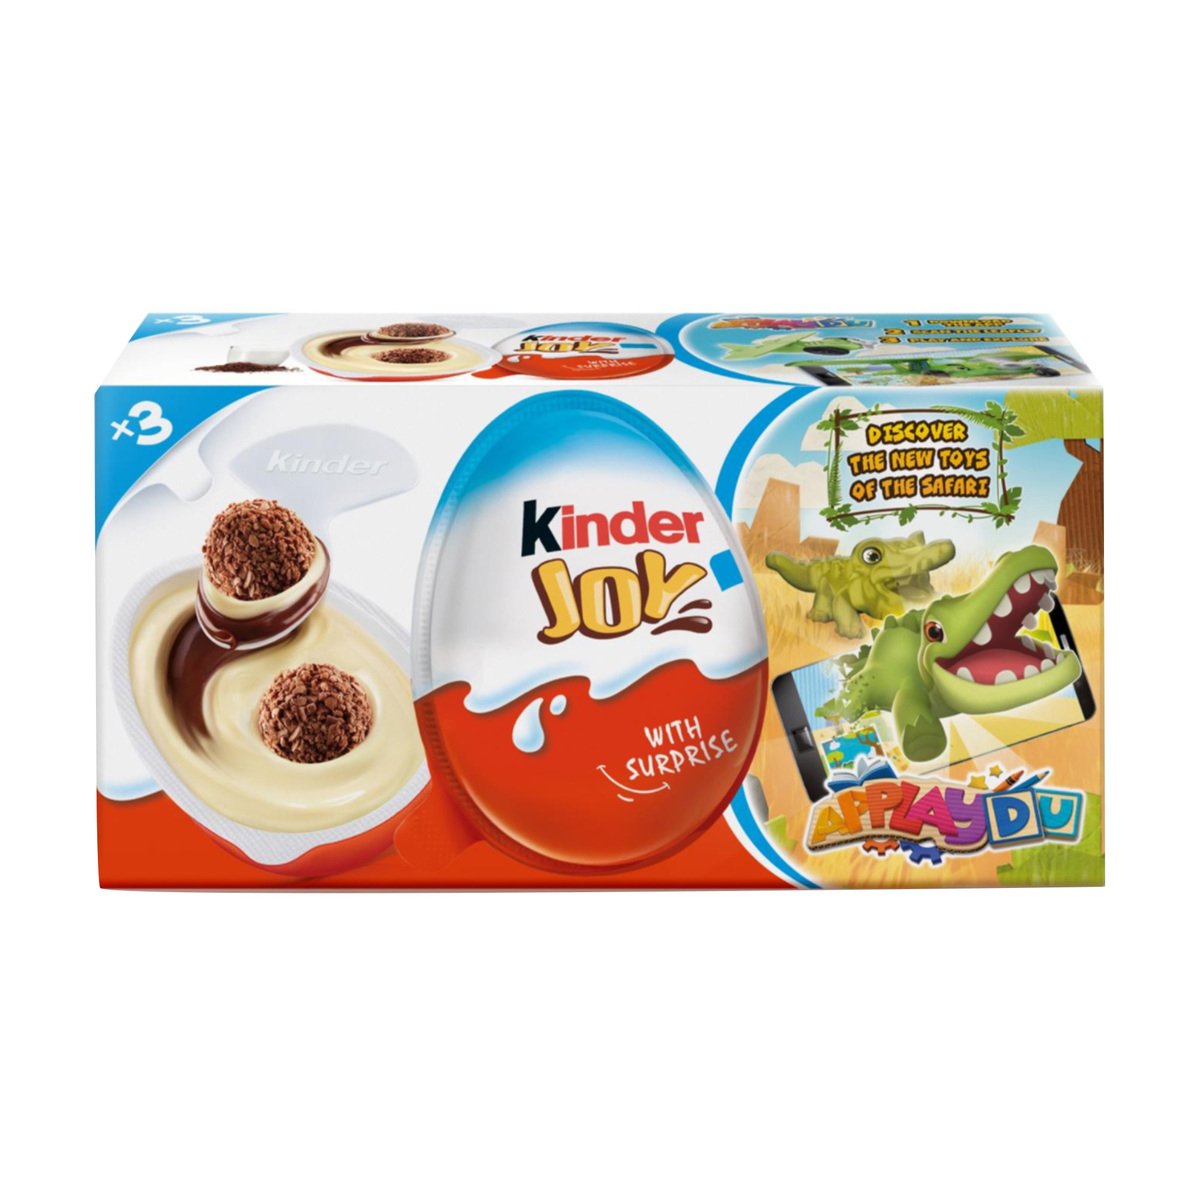 اشتري قم بشراء فيريرو كيندر جوي بيض للأولاد 20 جم × 3 Online at Best Price من الموقع - من لولو هايبر ماركت Kids Chocolate في السعودية